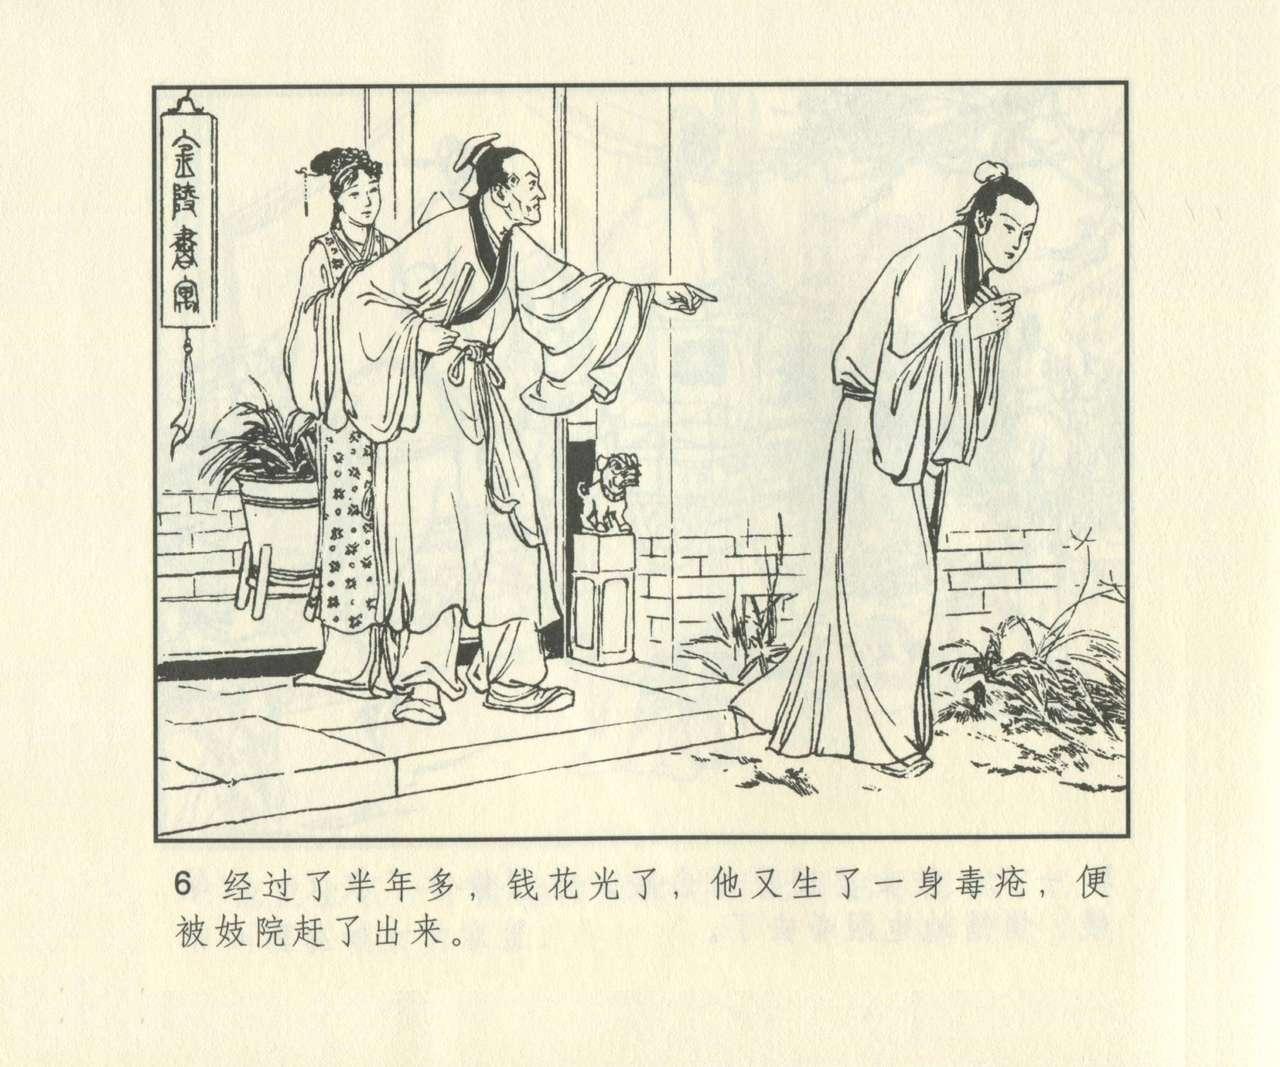 聊斋志异 张玮等绘 天津人民美术出版社 卷二十一 ~ 三十 622